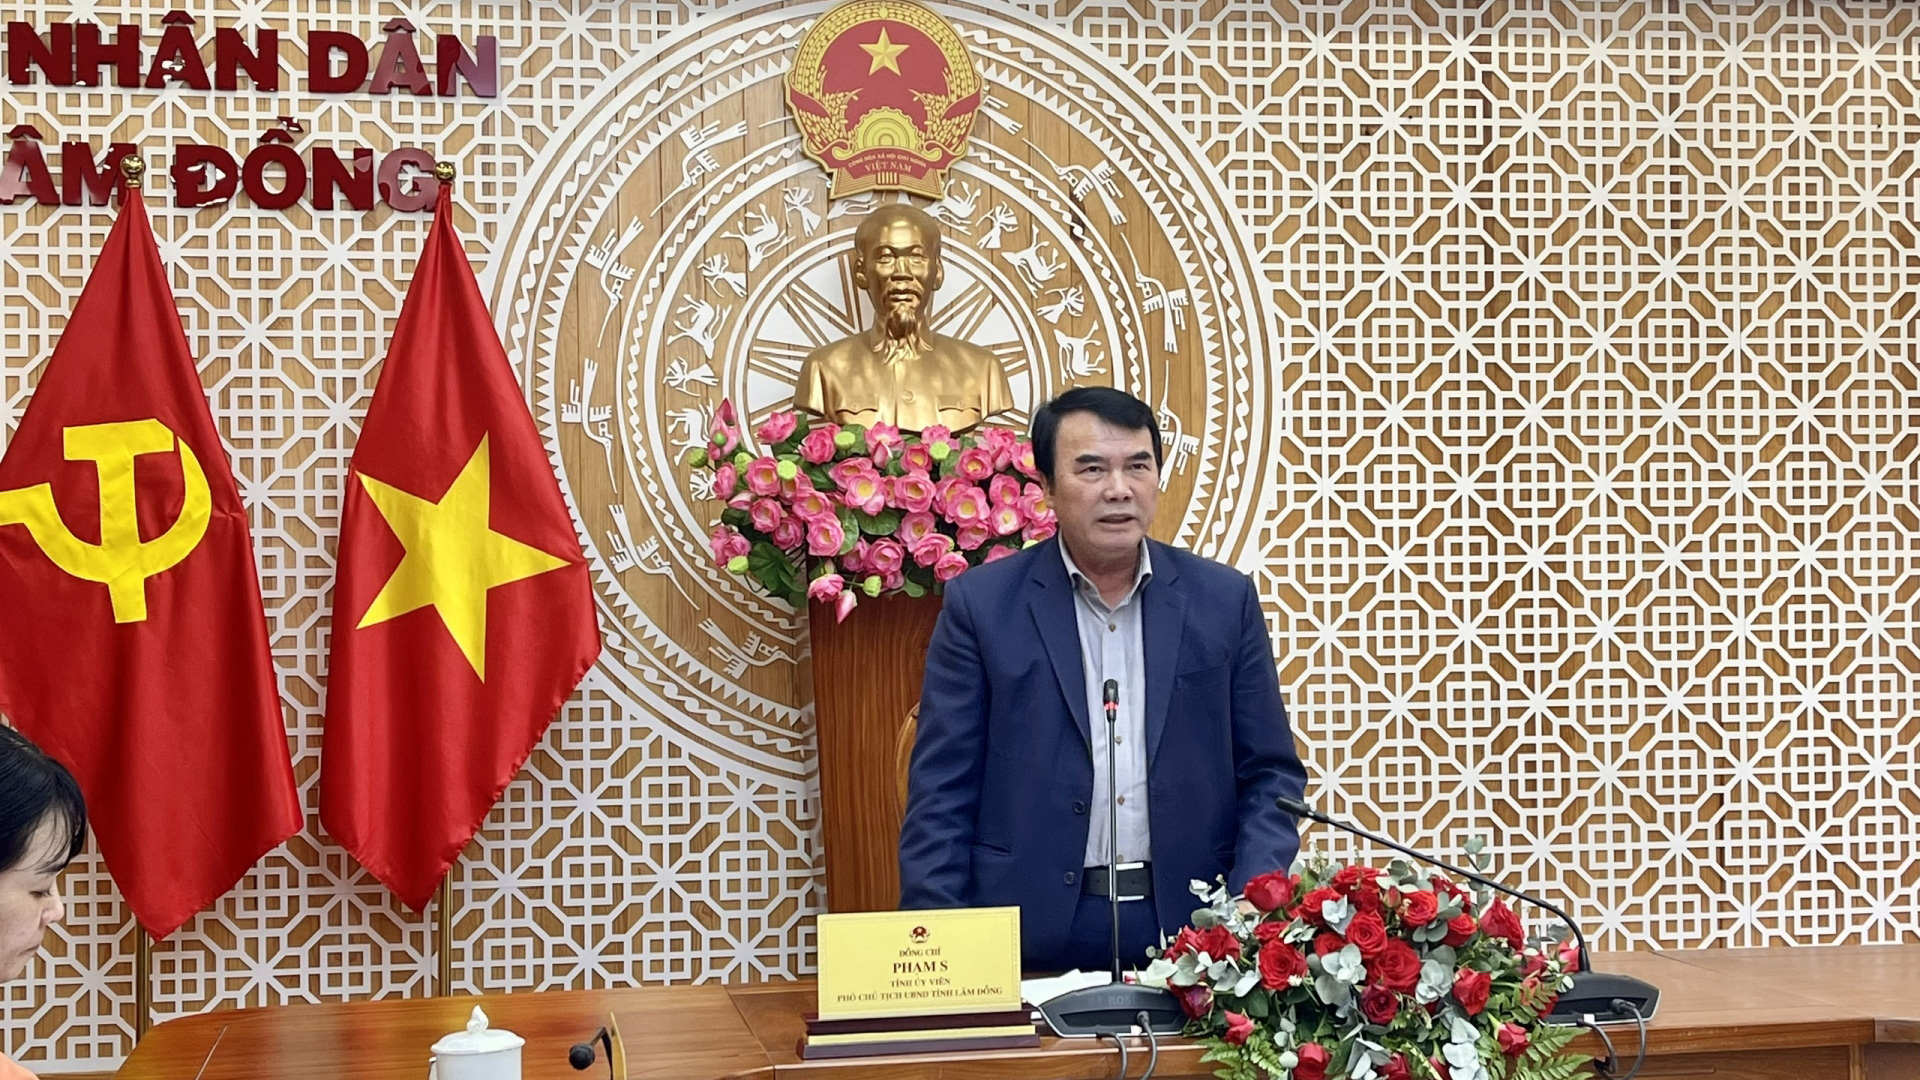 Ông Phạm S – Phó Chủ tịch UBND tỉnh, Trưởng Ban Chỉ đạo liên ngành về vệ sinh ATTP tỉnh chủ trì hội nghị